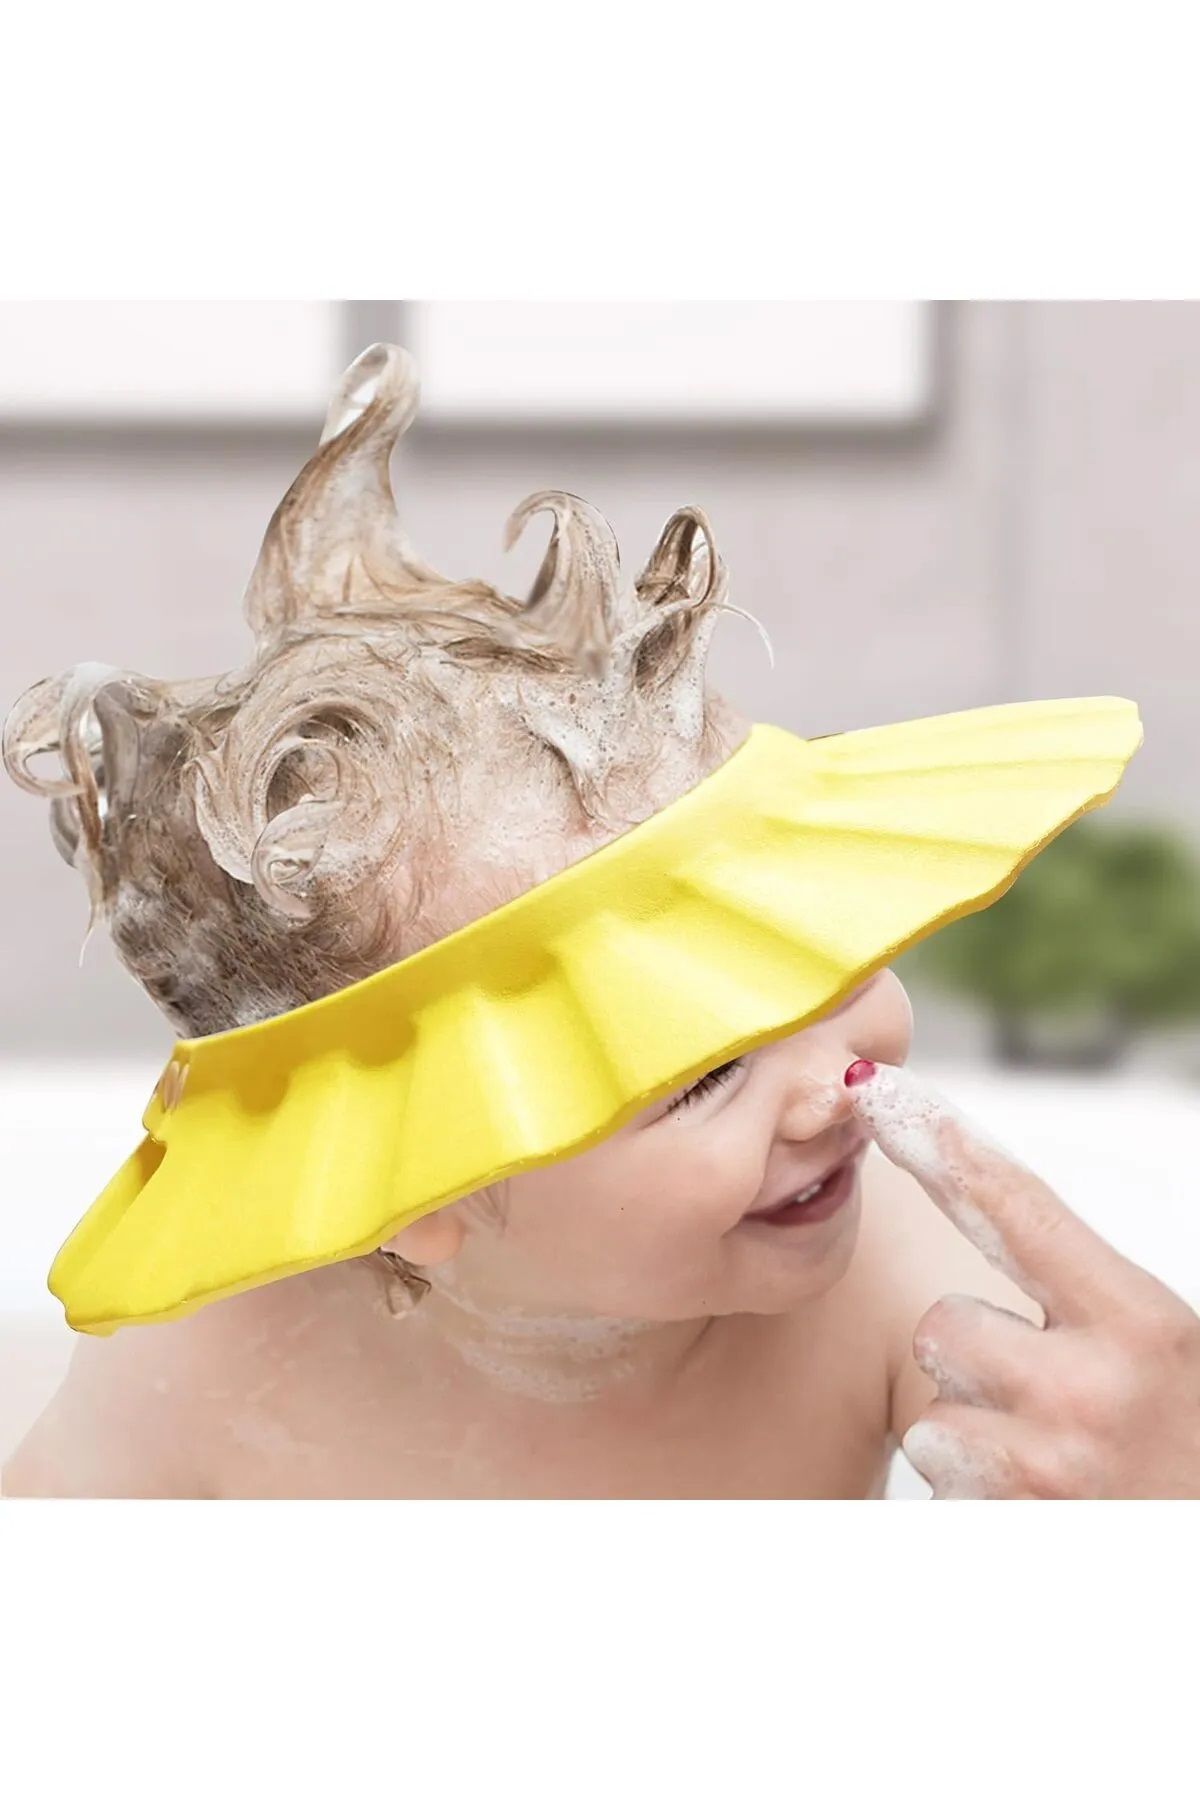 Bebek Duş Başlığı, Bebek Güneş Şapkası Göz, Ağız ve Kulaklara Su Kaçmasını Önleyeci Sarı Şapka.